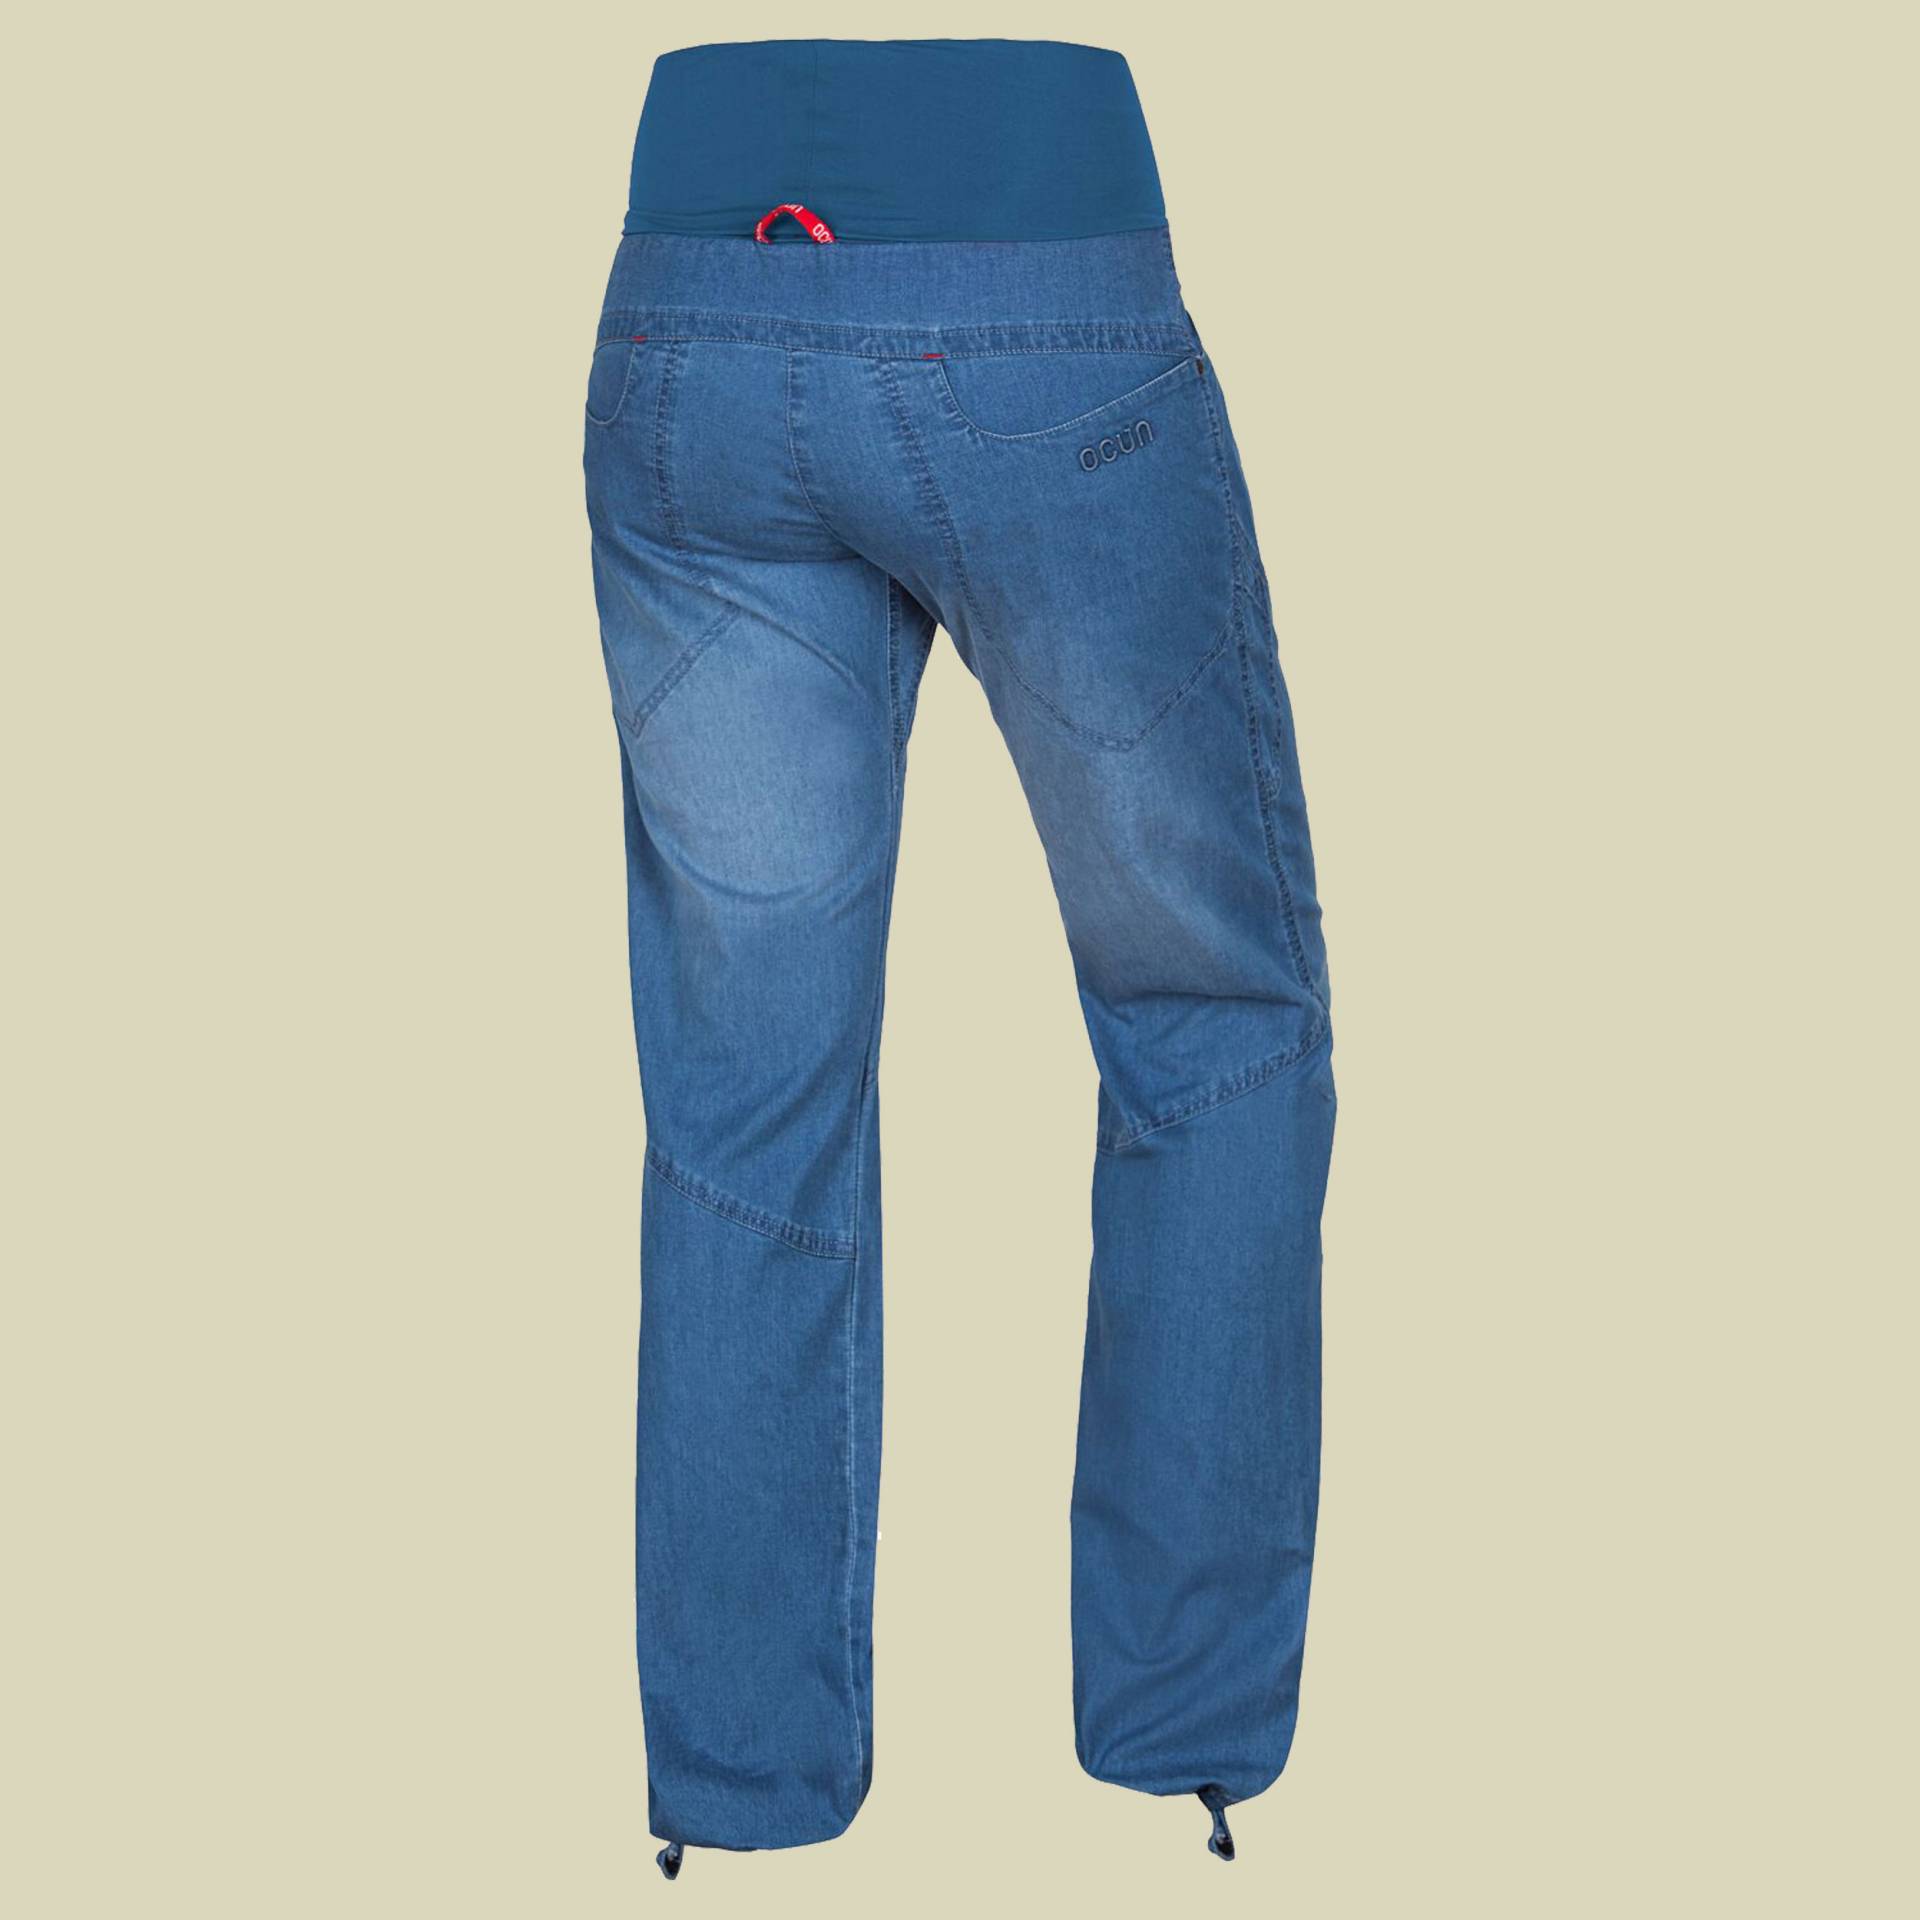 Noya Jeans Women Größe S Farbe middle blue von Ocun